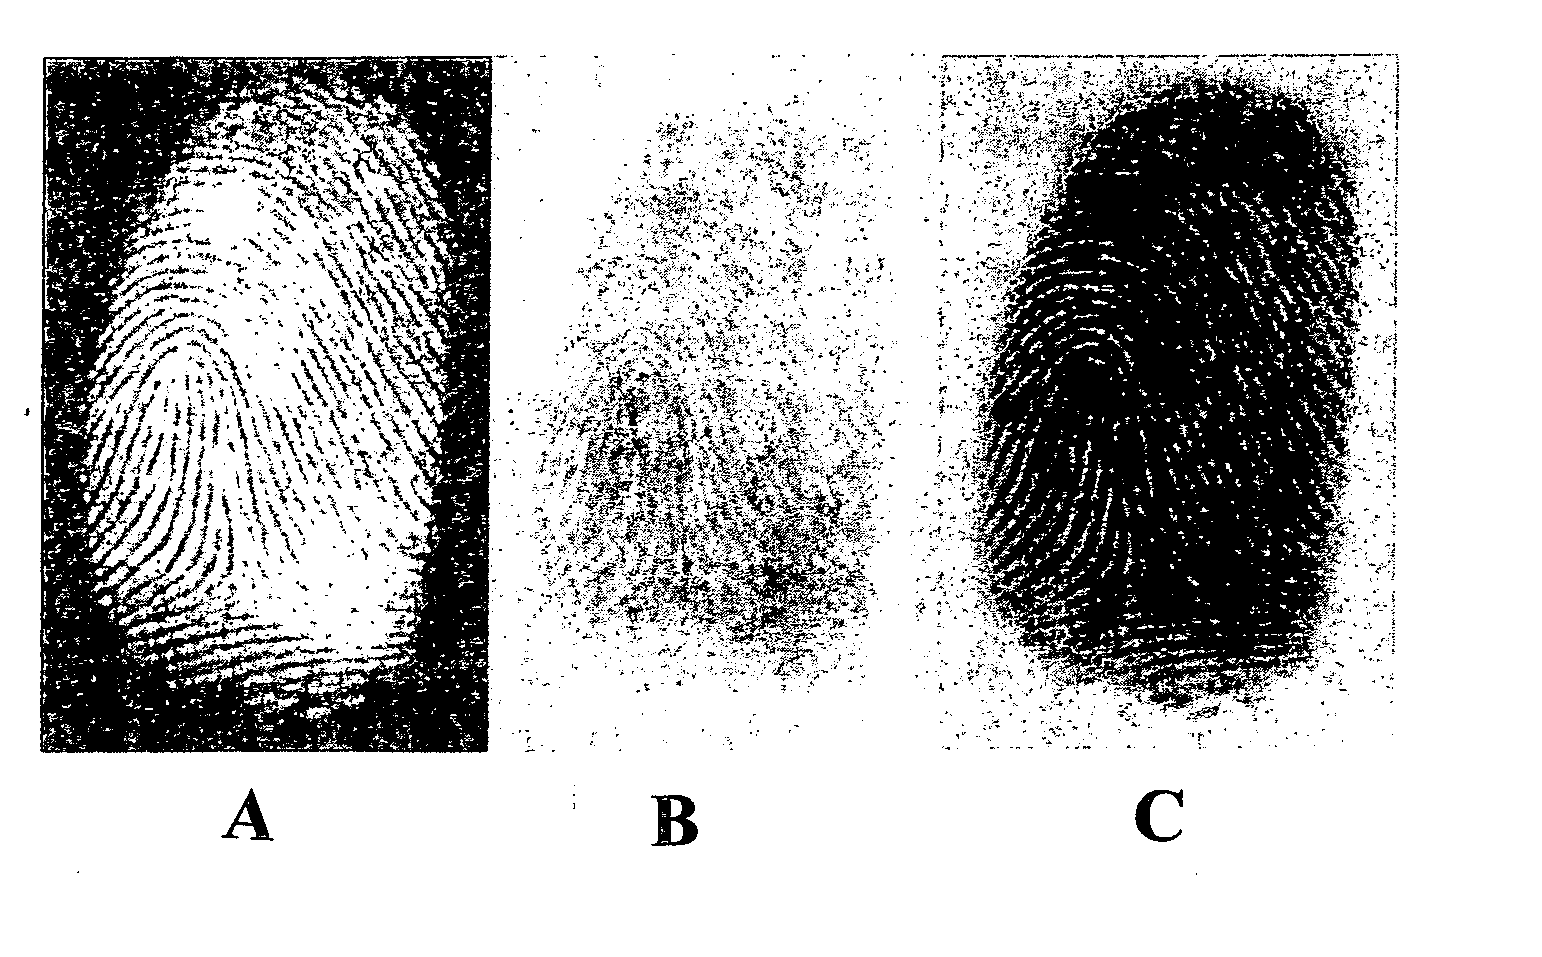 Method of Developing Latent Fingerprints